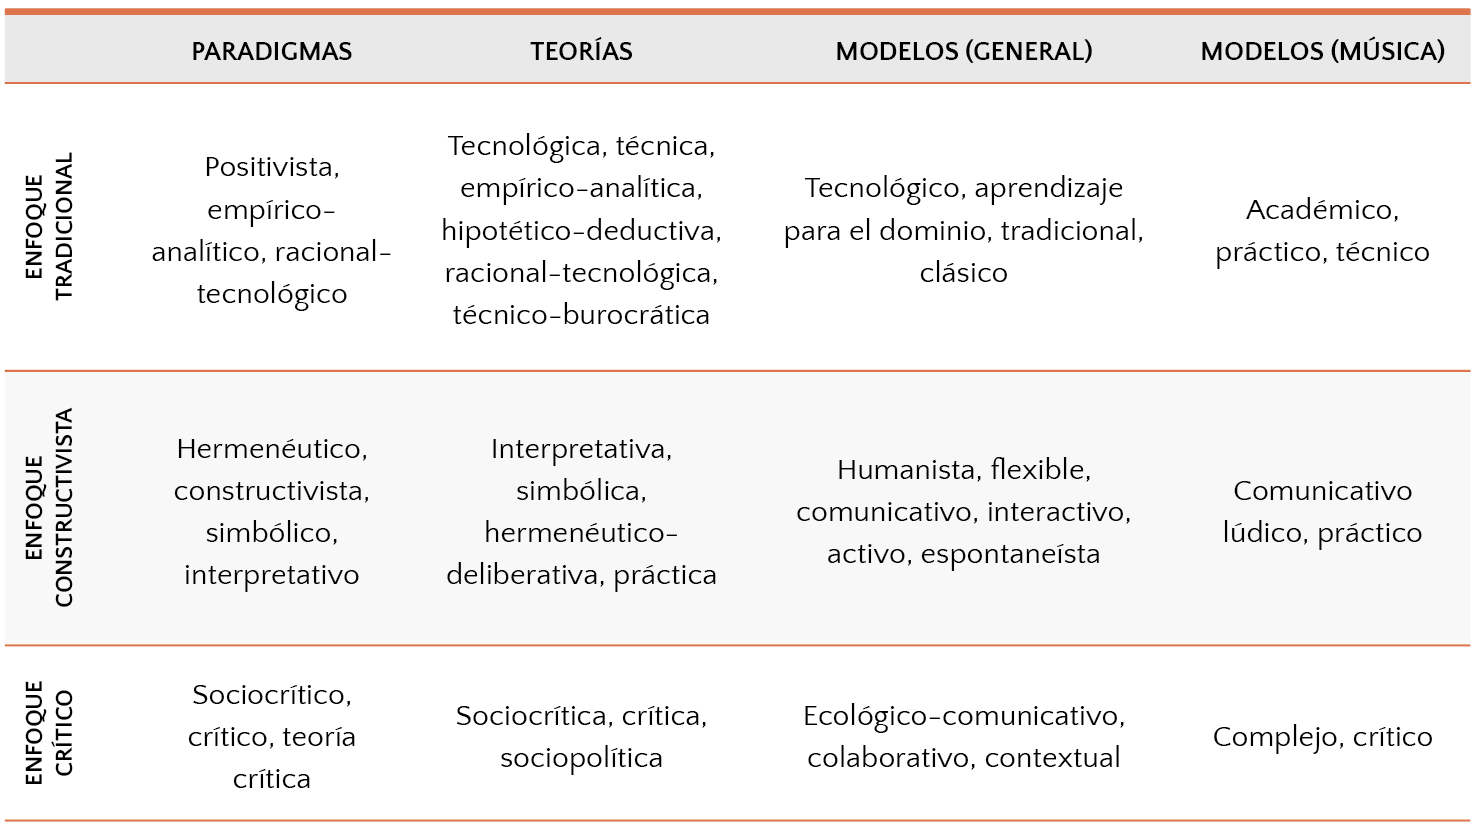 Modelos didácticos aplicados a la educación musical (Aróstegui, 2014) 